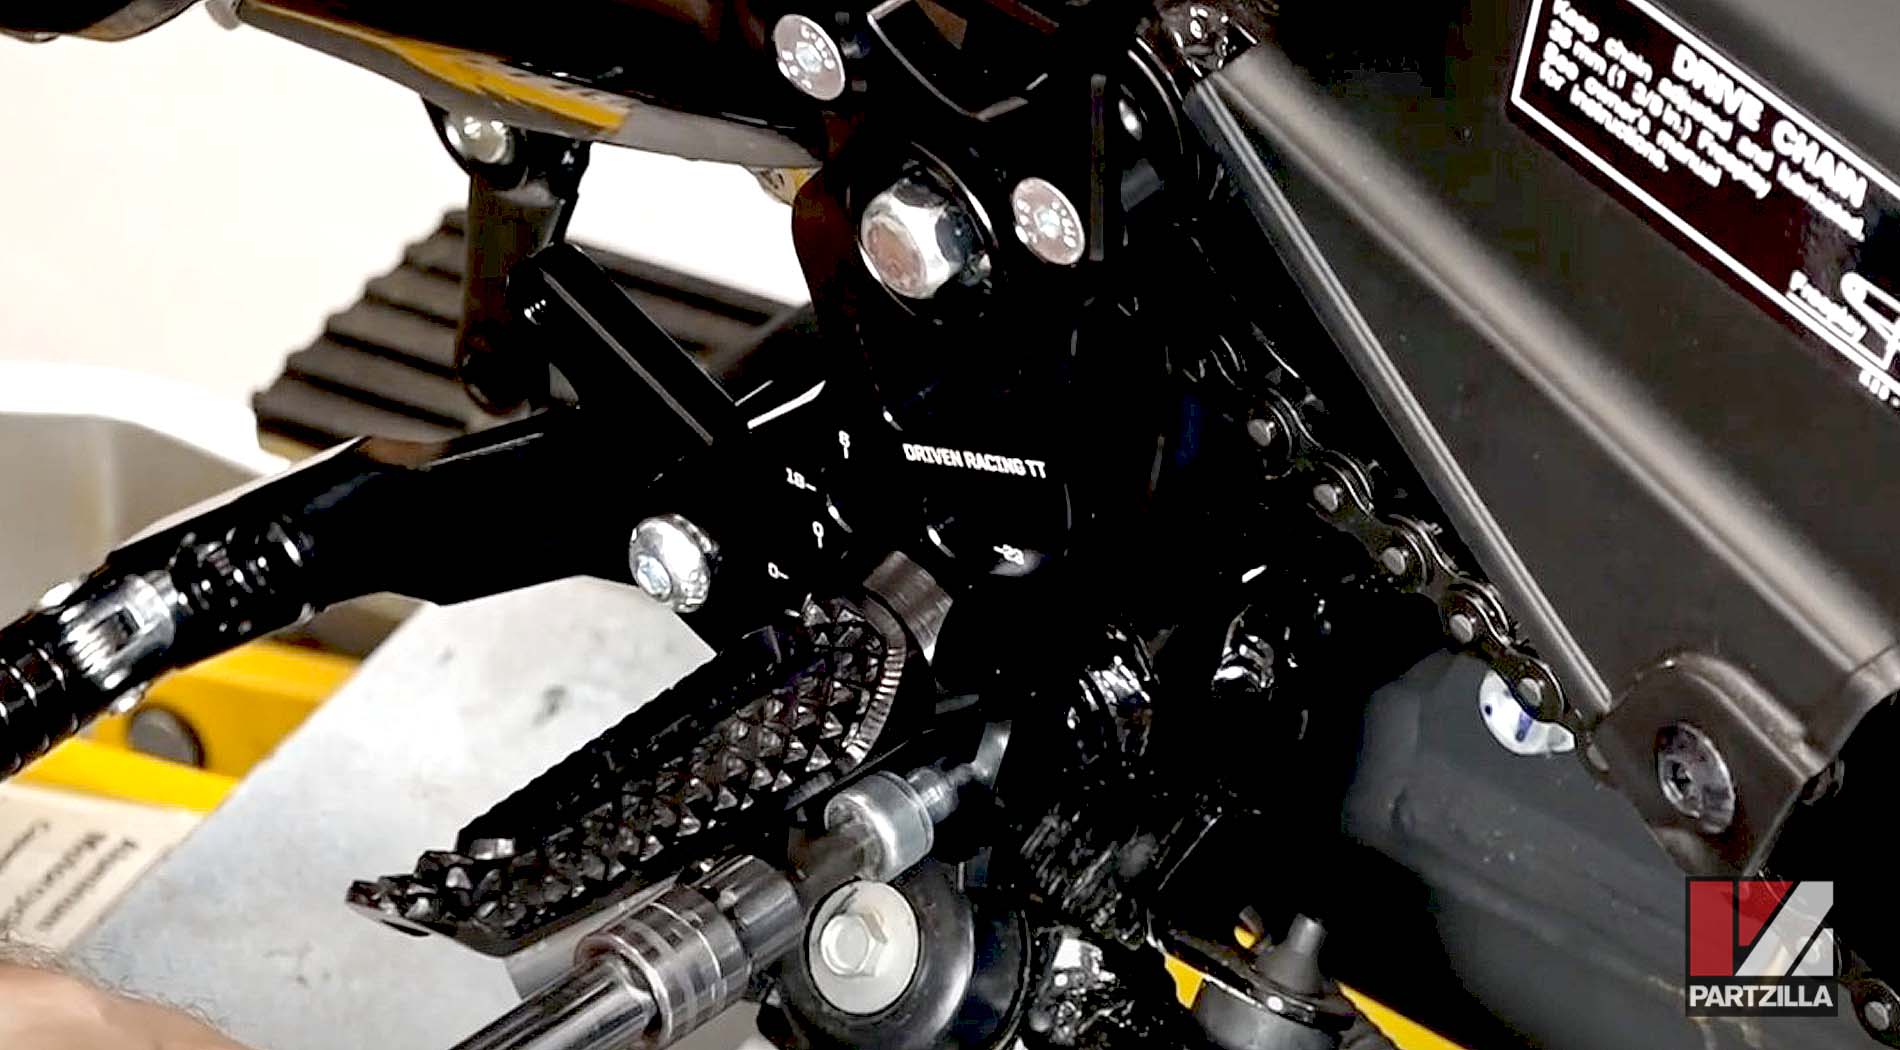 Honda Grom 125 rearset upgrade gearshift pedal installation